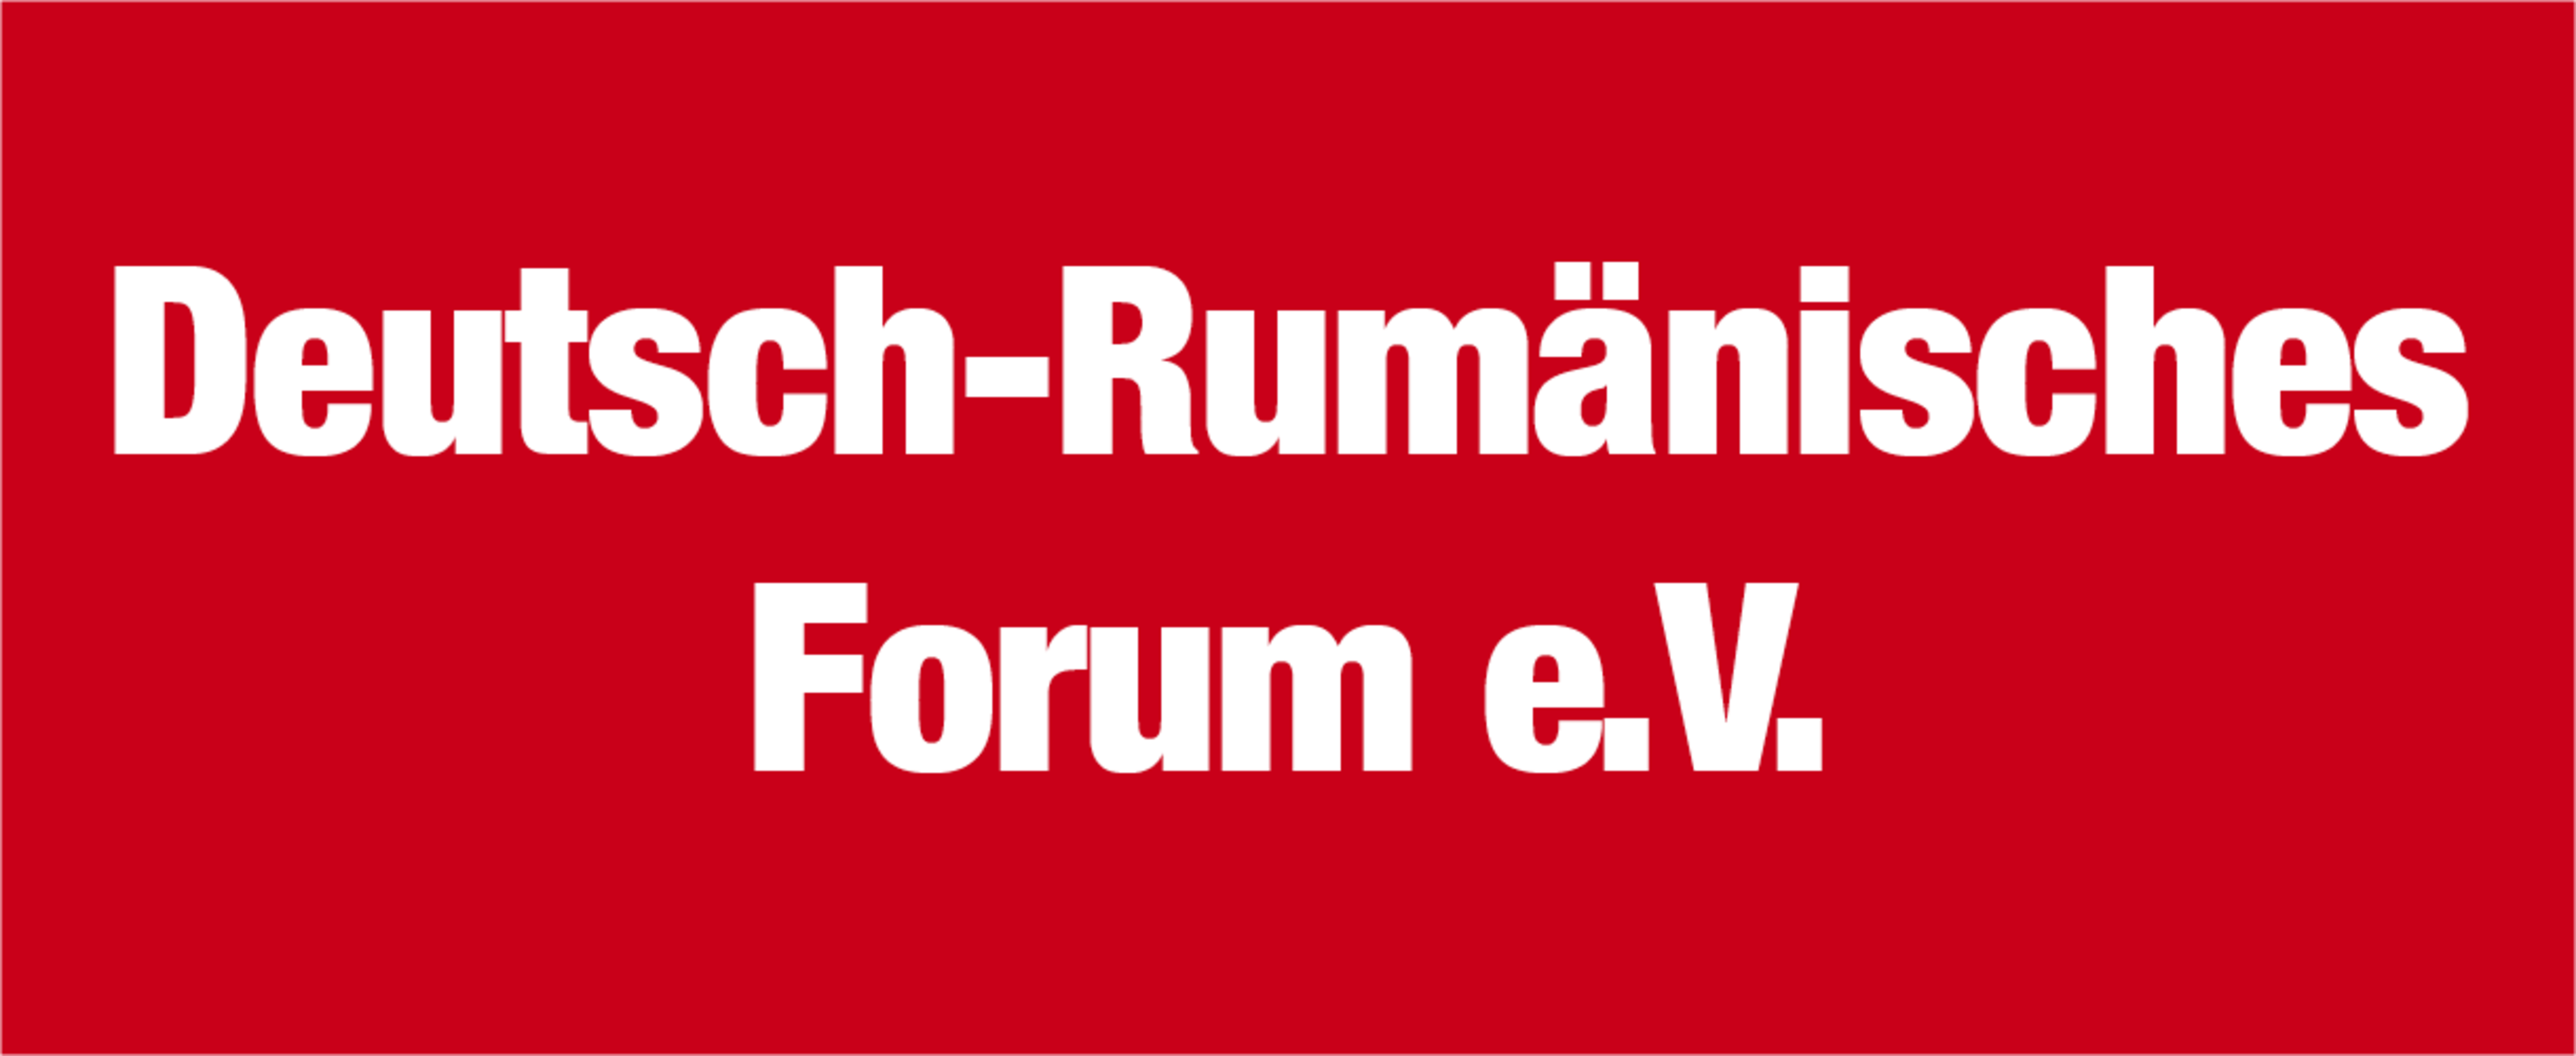 Deutsch-Rumänisches Forum e.V.